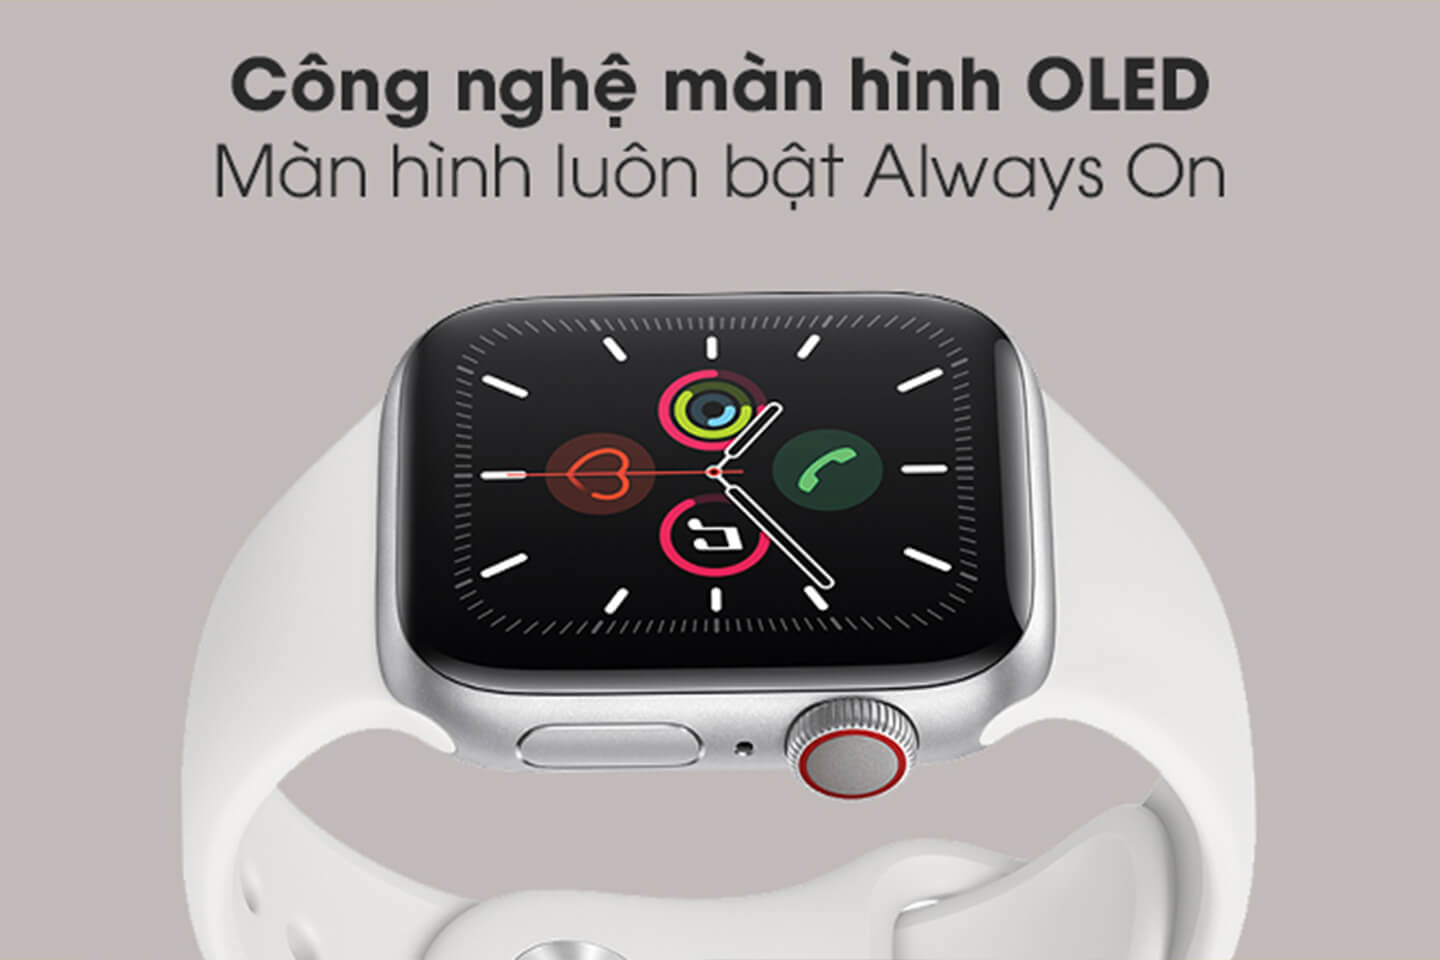 Công nghệ màn hình OLED trên Apple Watch Series 5 